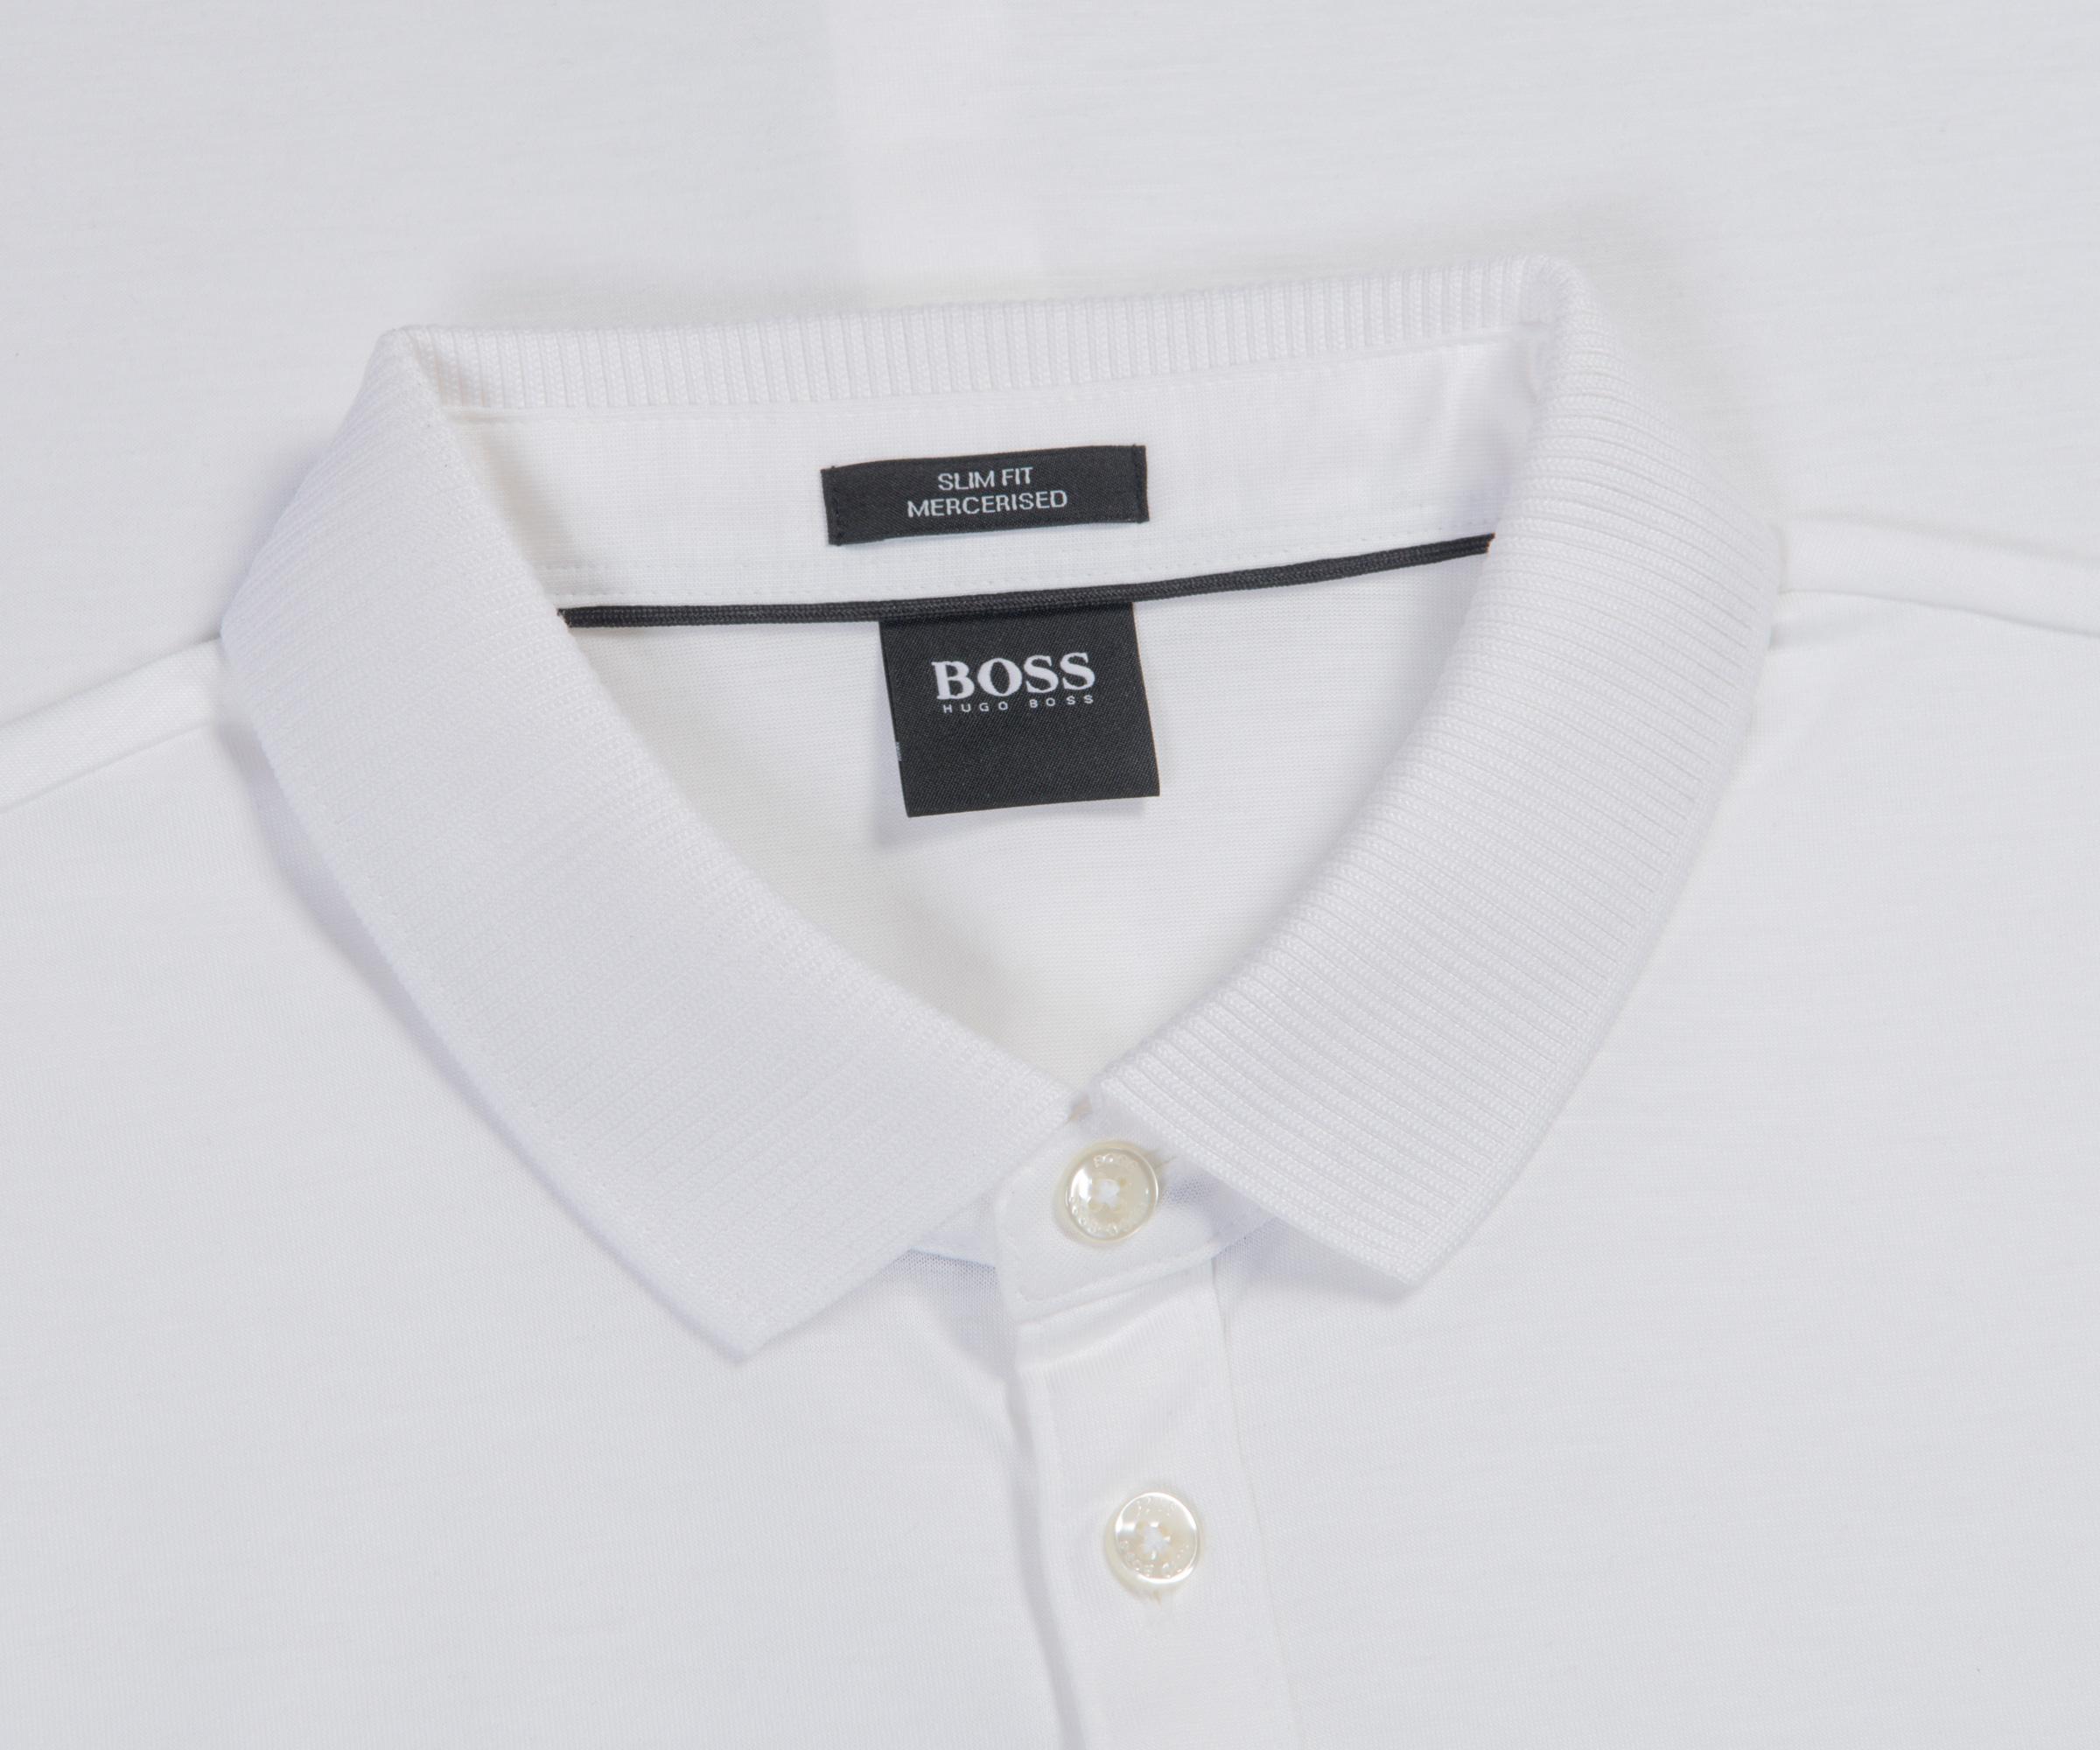 BOSS by HUGO BOSS 'puno 09' Mercerised Polo With Pocket White for Men - Lyst